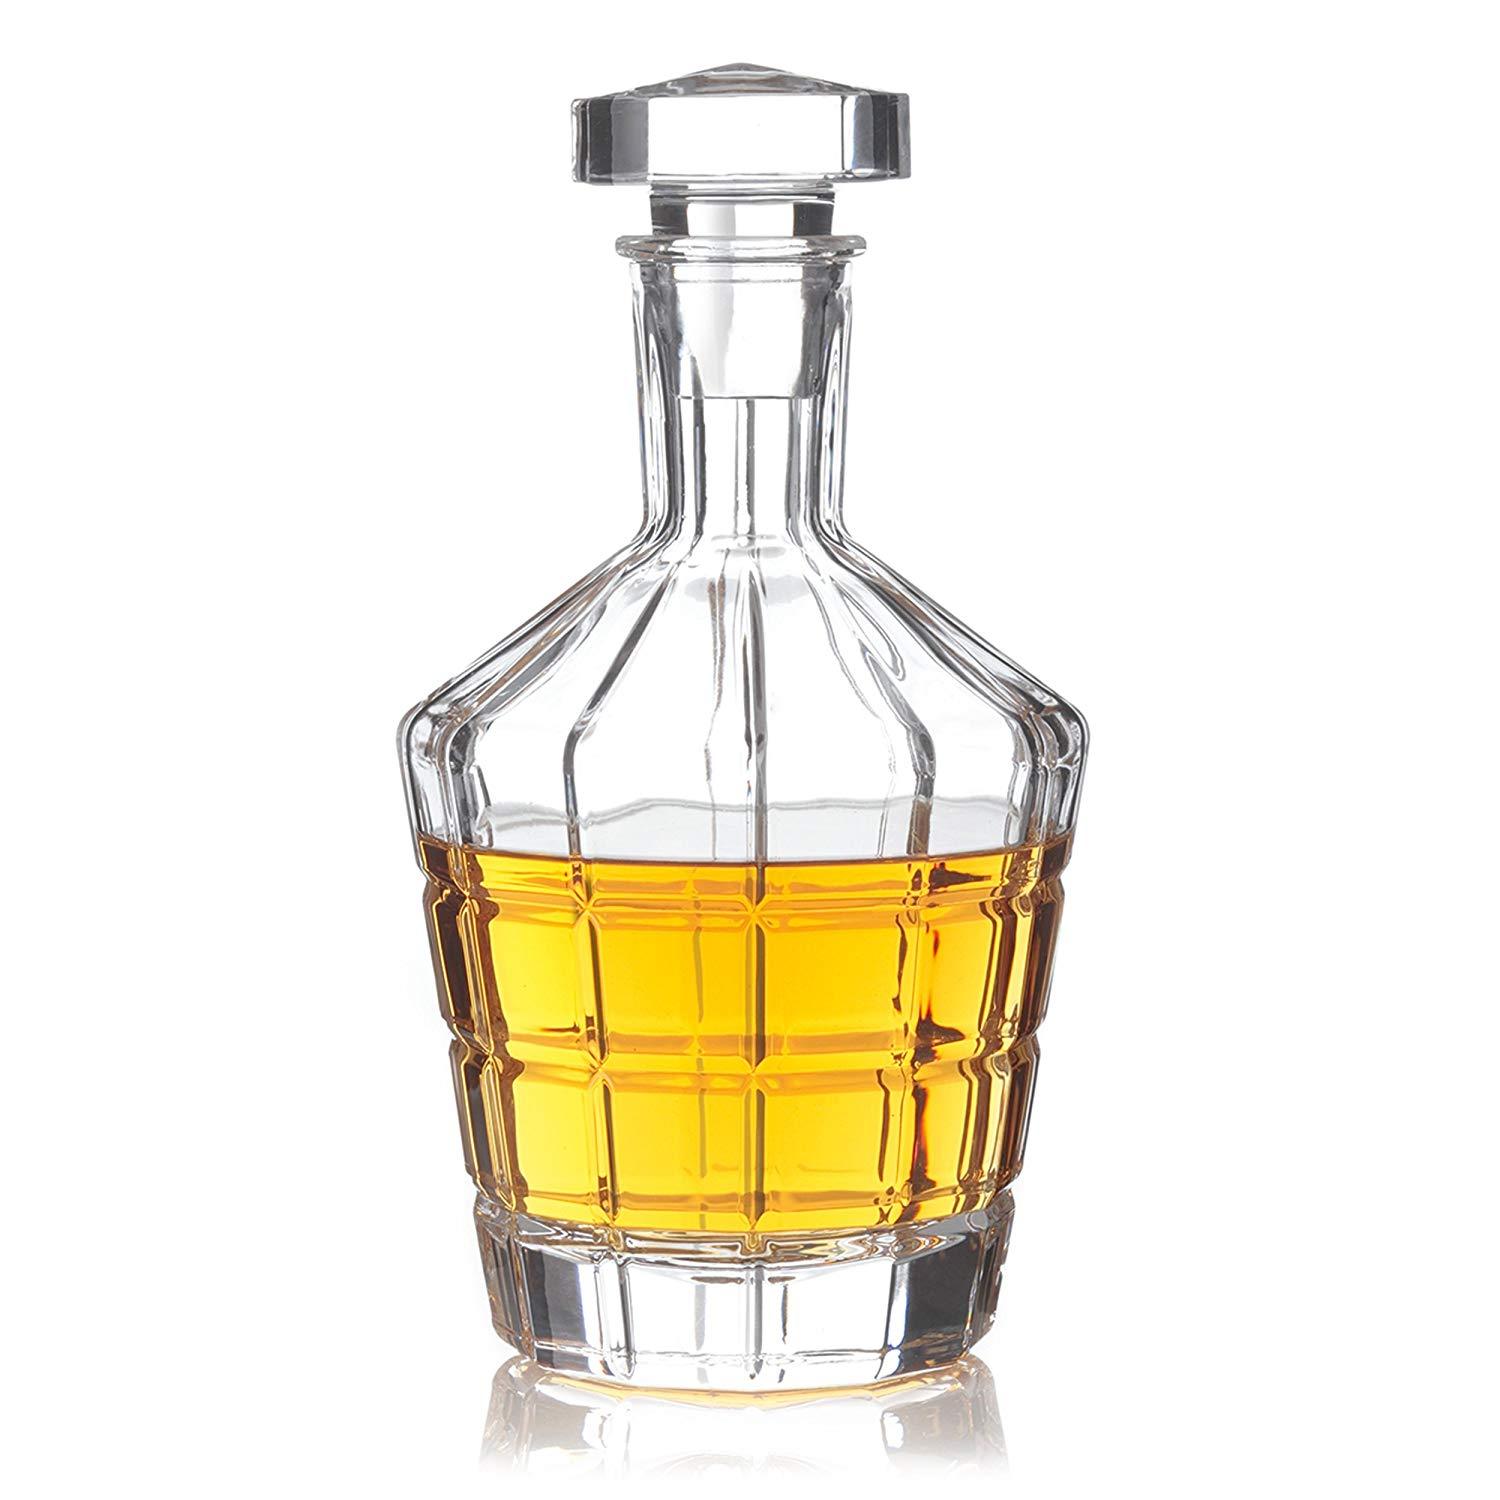 Leonardo Whisky Carafe Decanter Spiritii 750ml